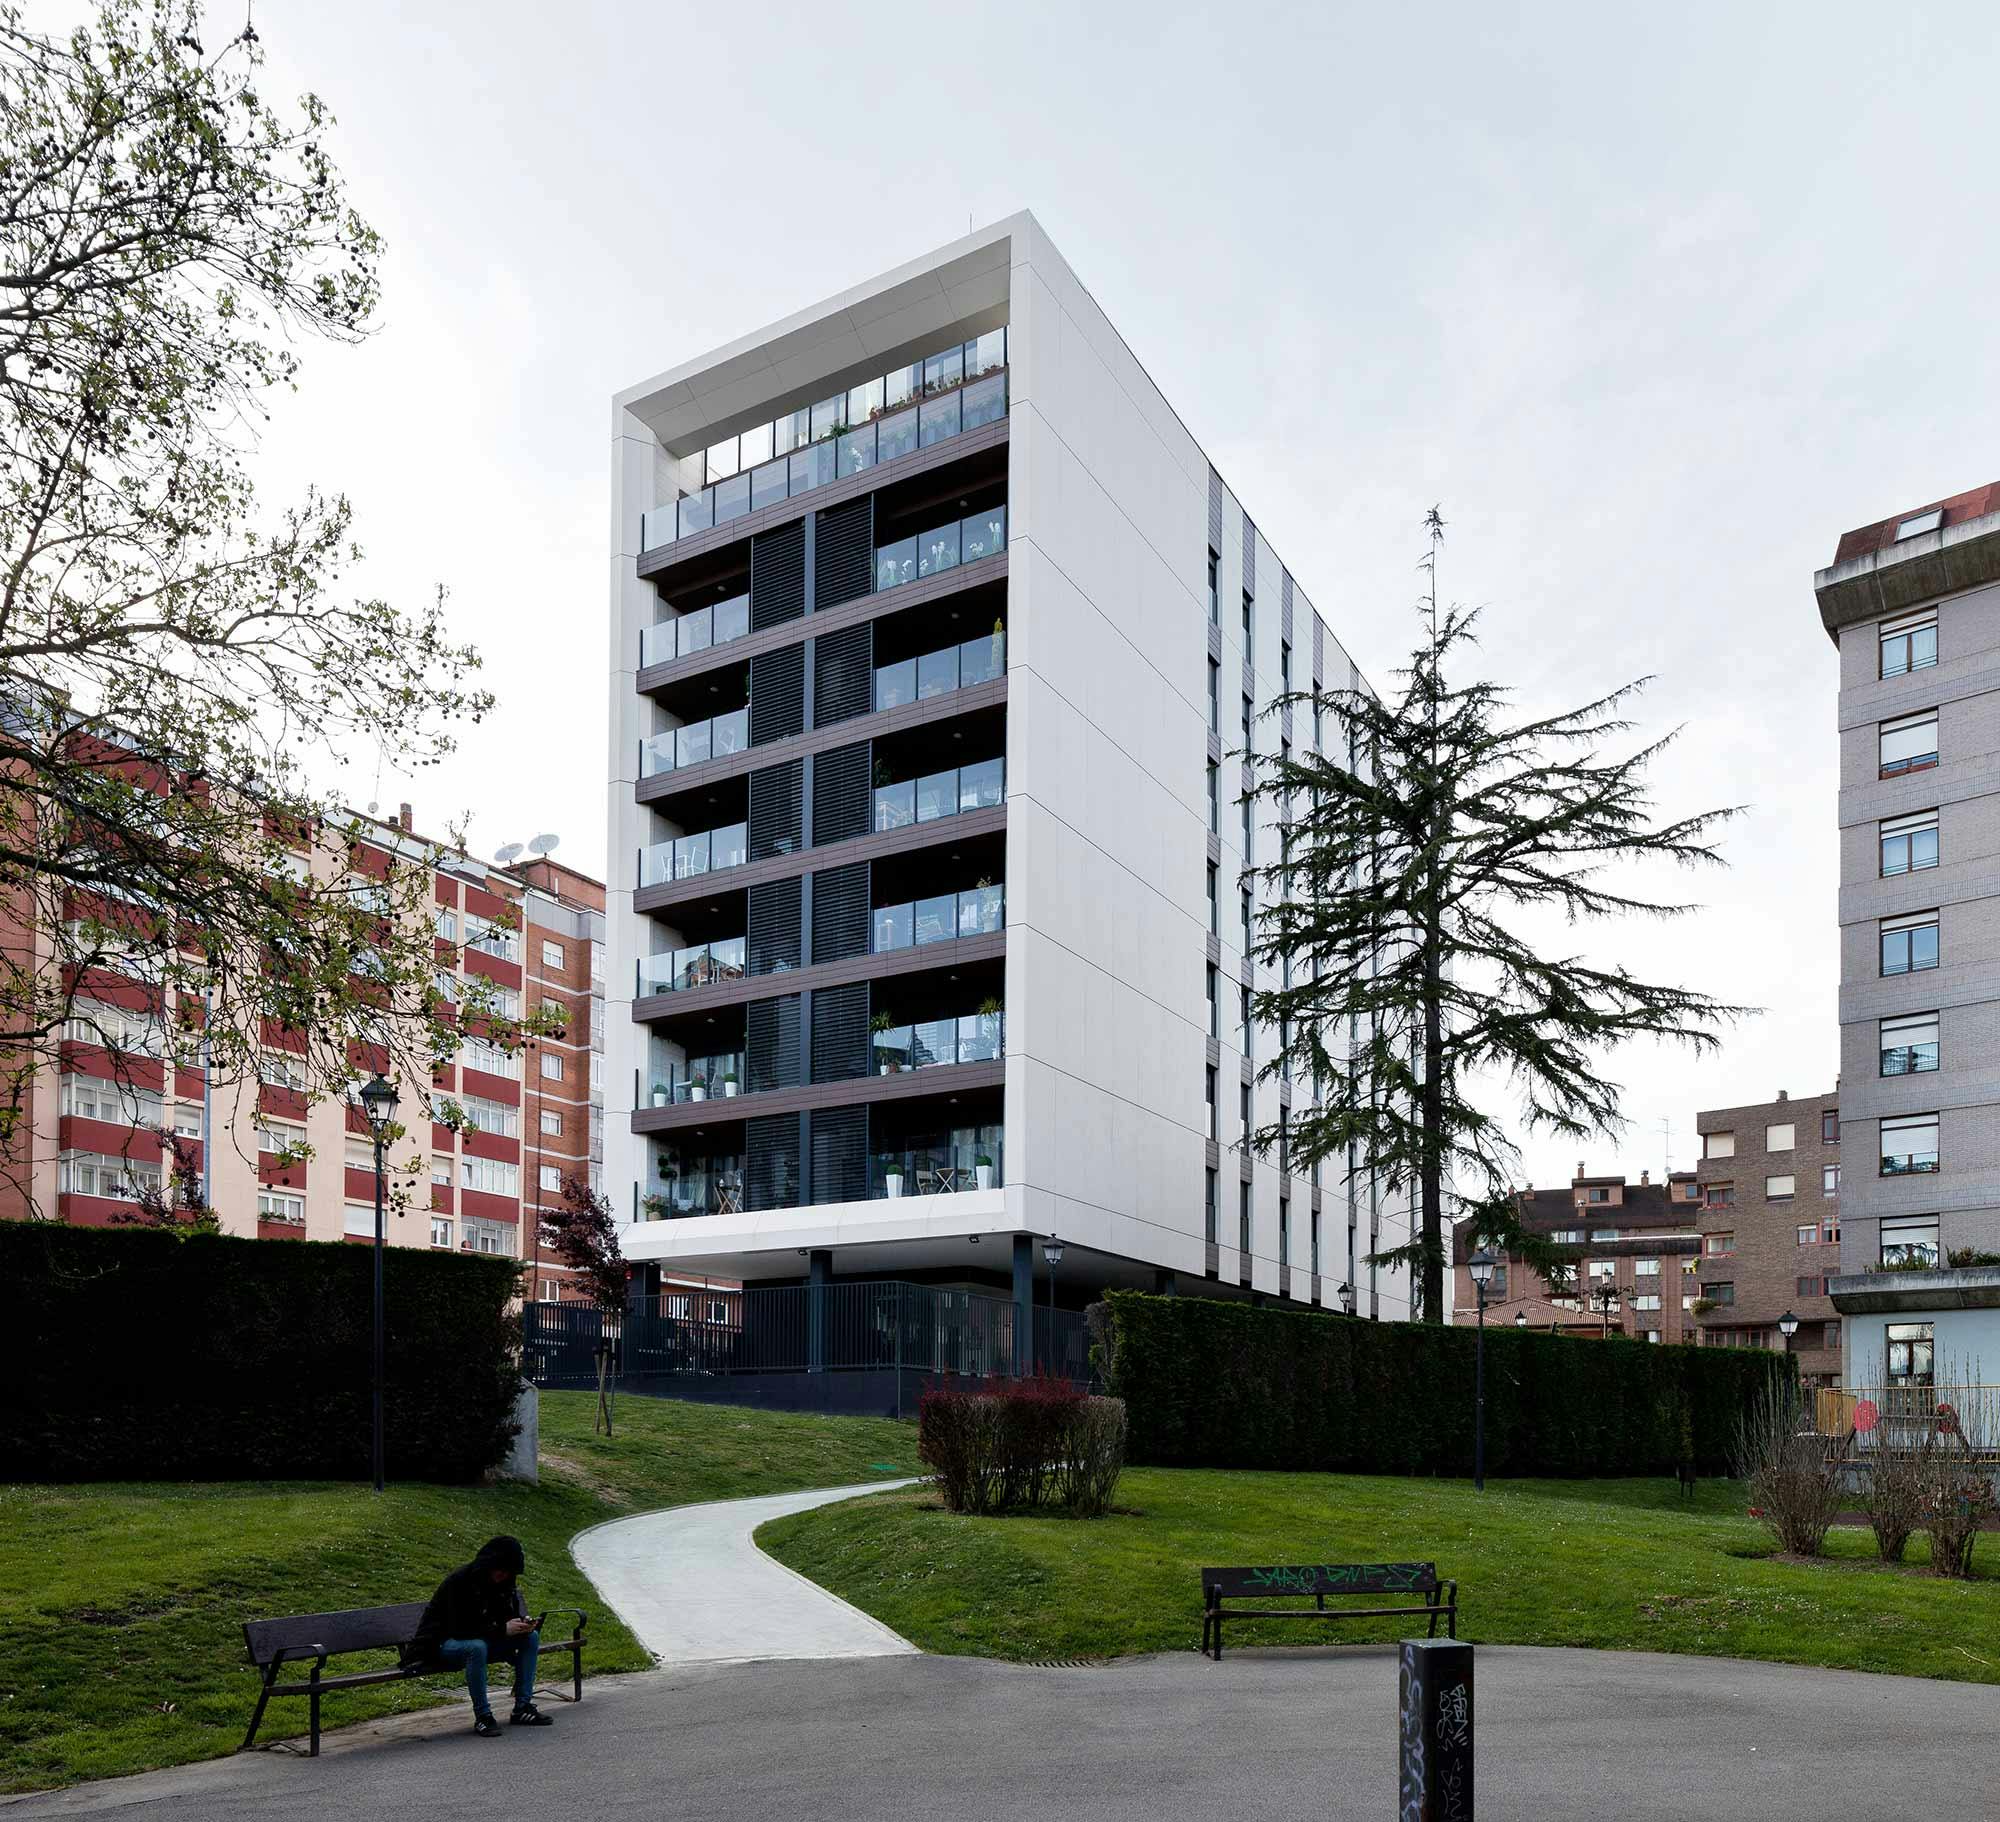 Image of Edificio viviendas oviedo sanatorio blanco 6.jpg?auto=format%2Ccompress&ixlib=php 3.3 in Edificio TQ - Cosentino